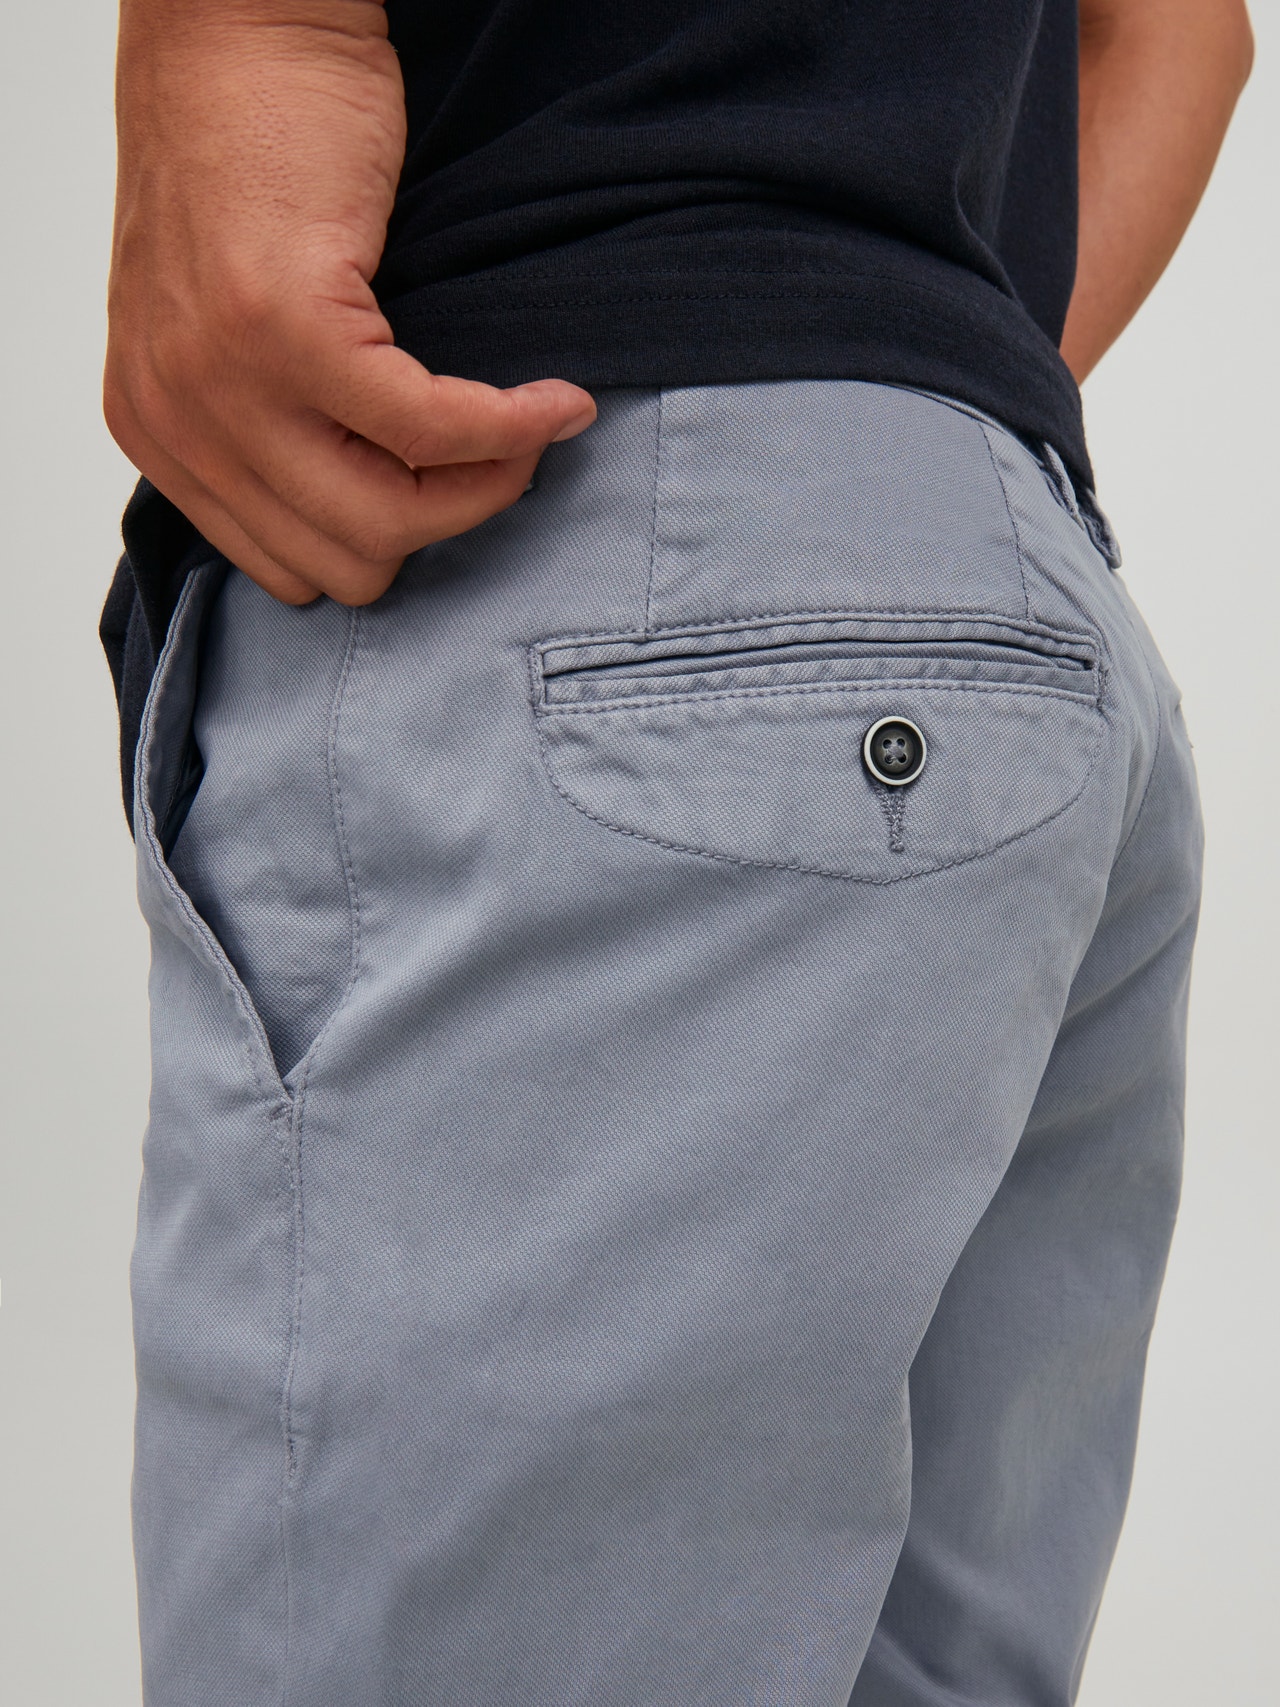 Jack & Jones Παντελόνι Slim Fit Chinos -Ultimate Grey - 12184901